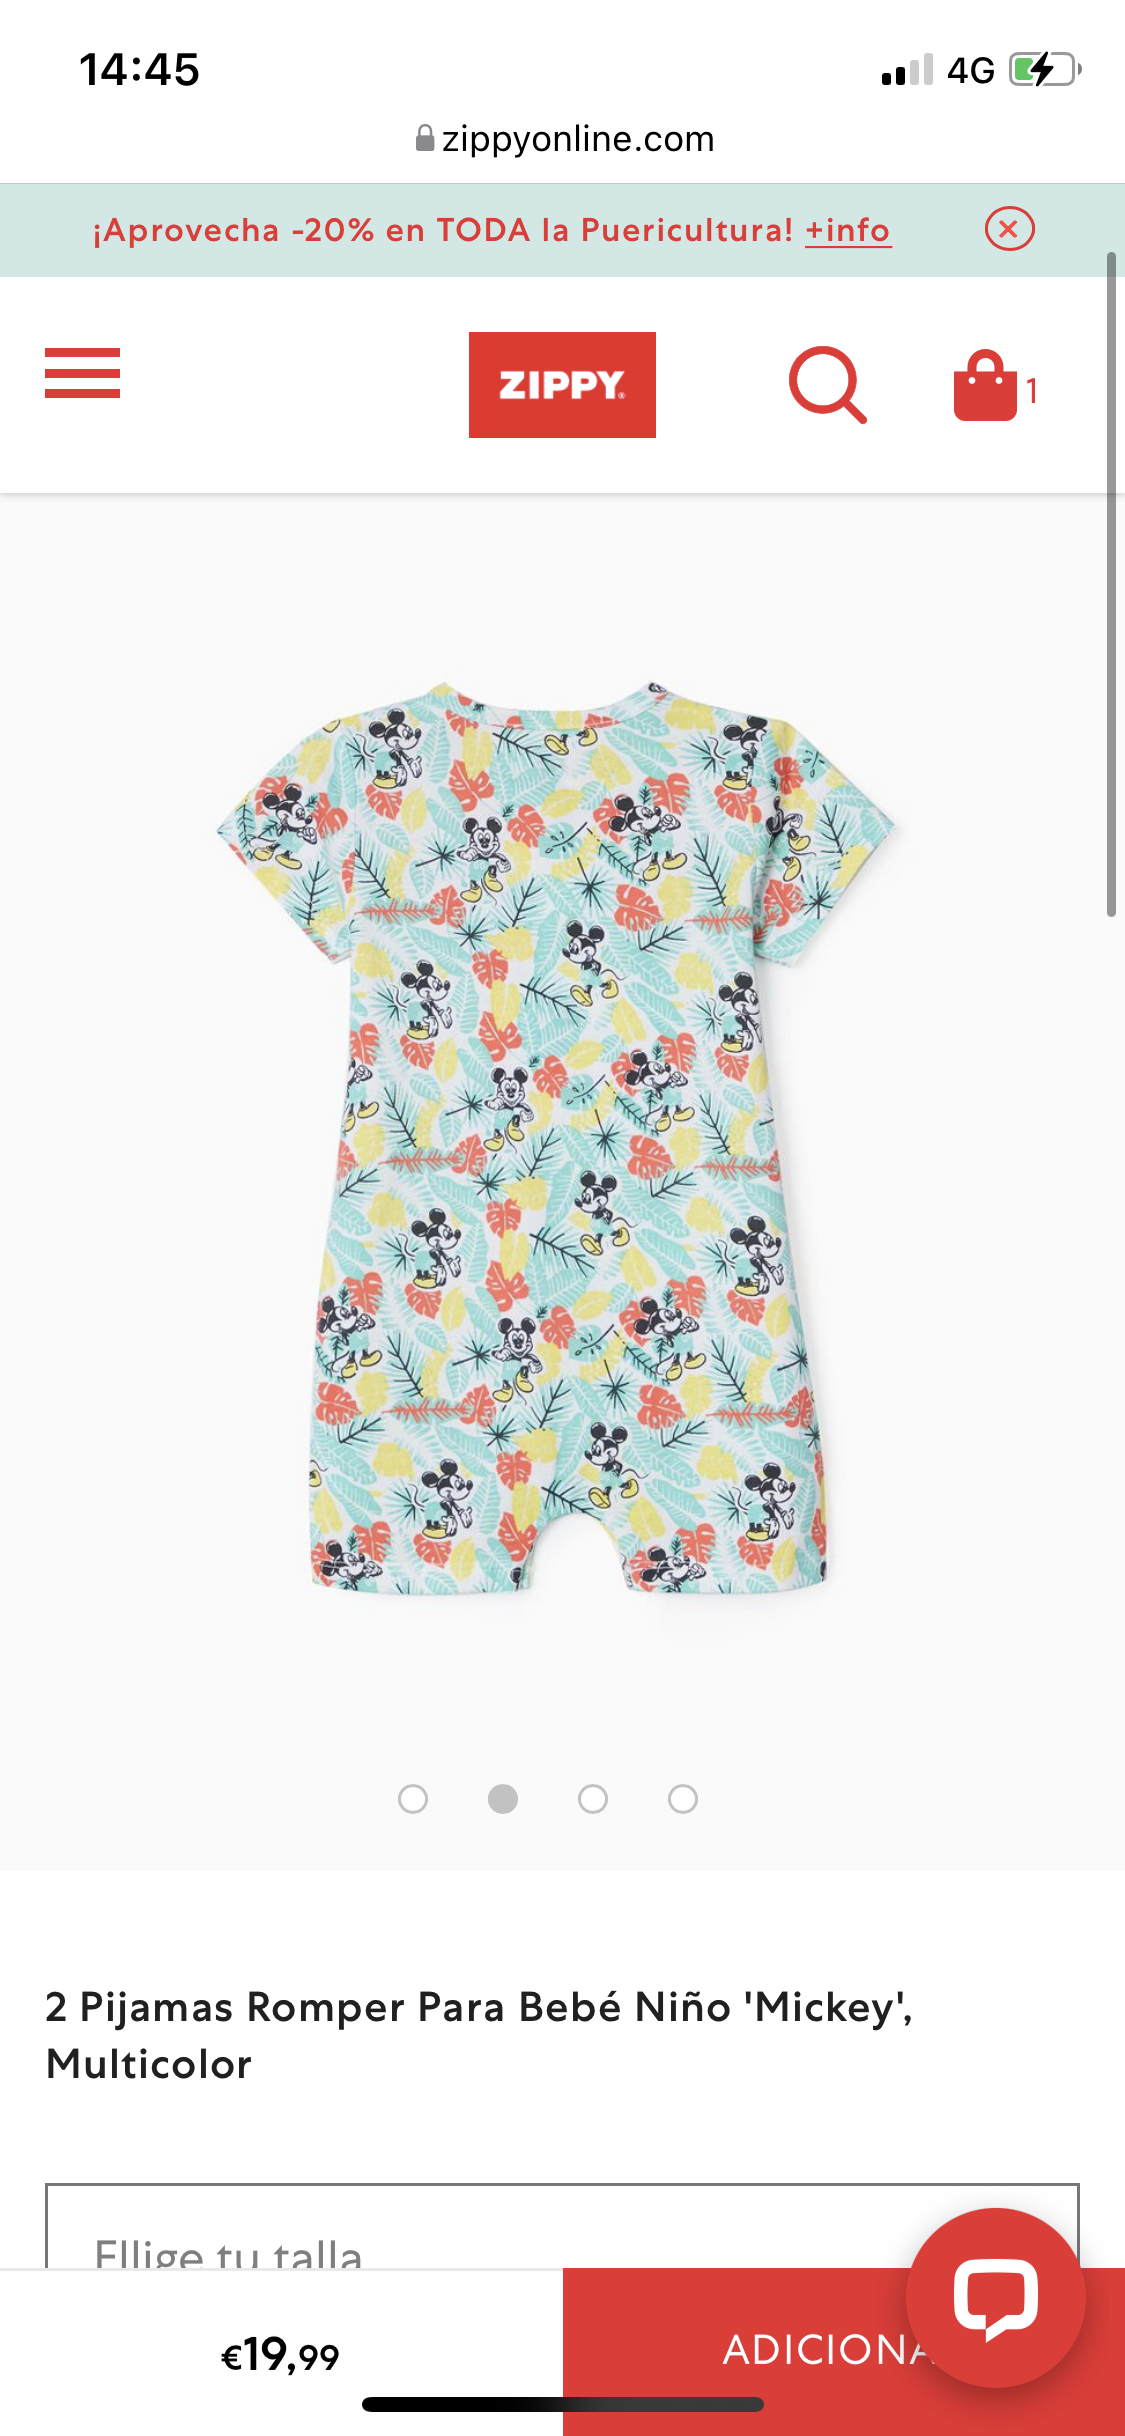 2 Pijamas Romper Para Bebé Niño 'Mickey', Multicolor lolimariscalmoda 19.99